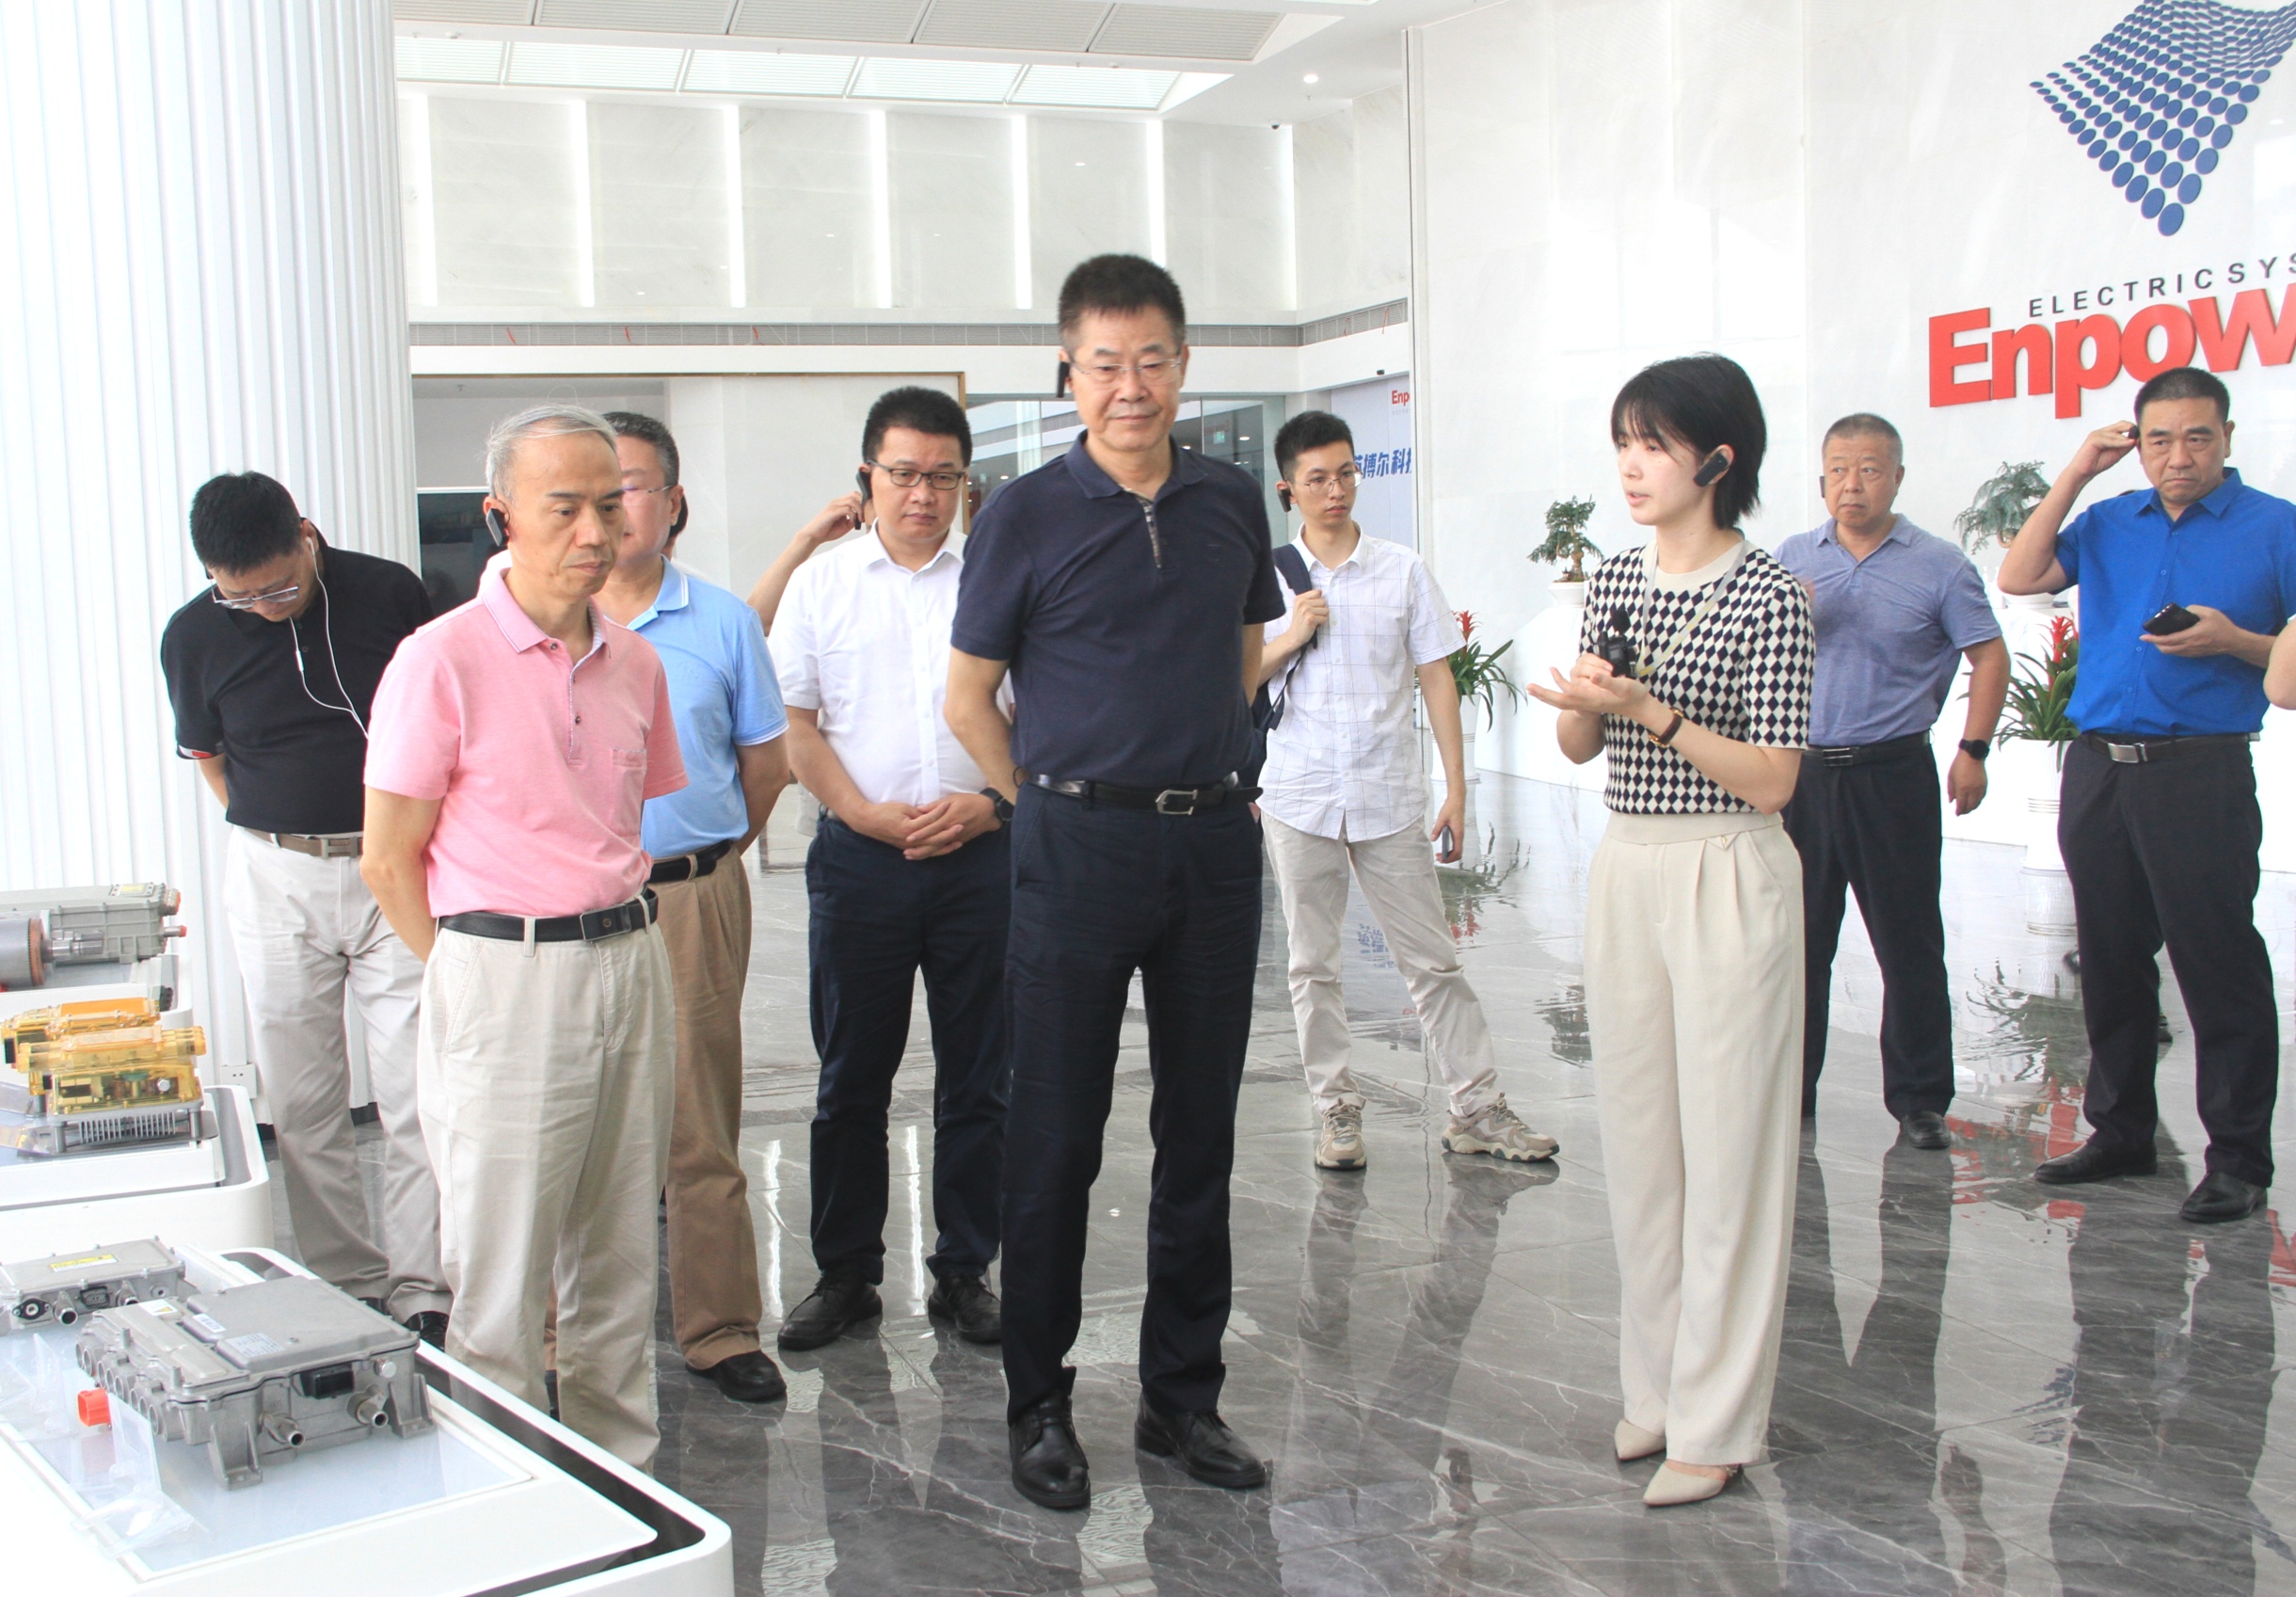 曾德明同志陪同北京市政协考察团在珠海考察.jpg